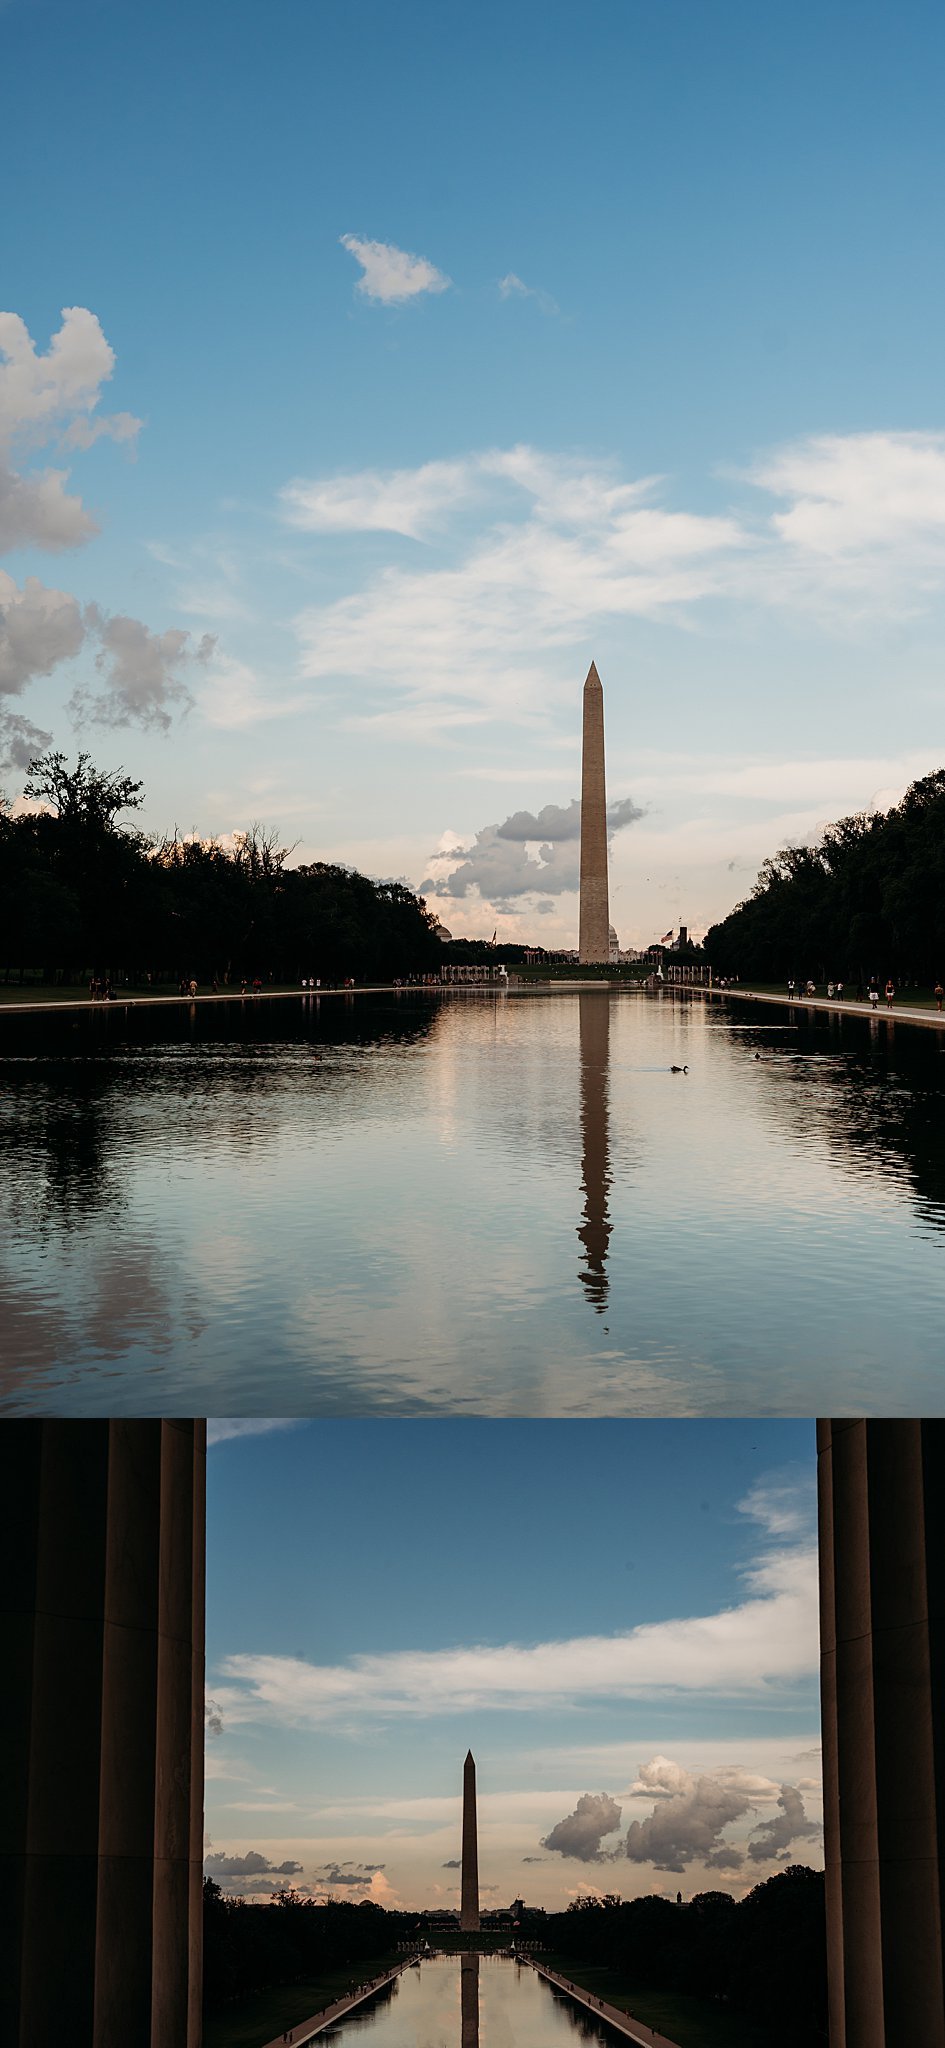 Washington monument and reflecting pool